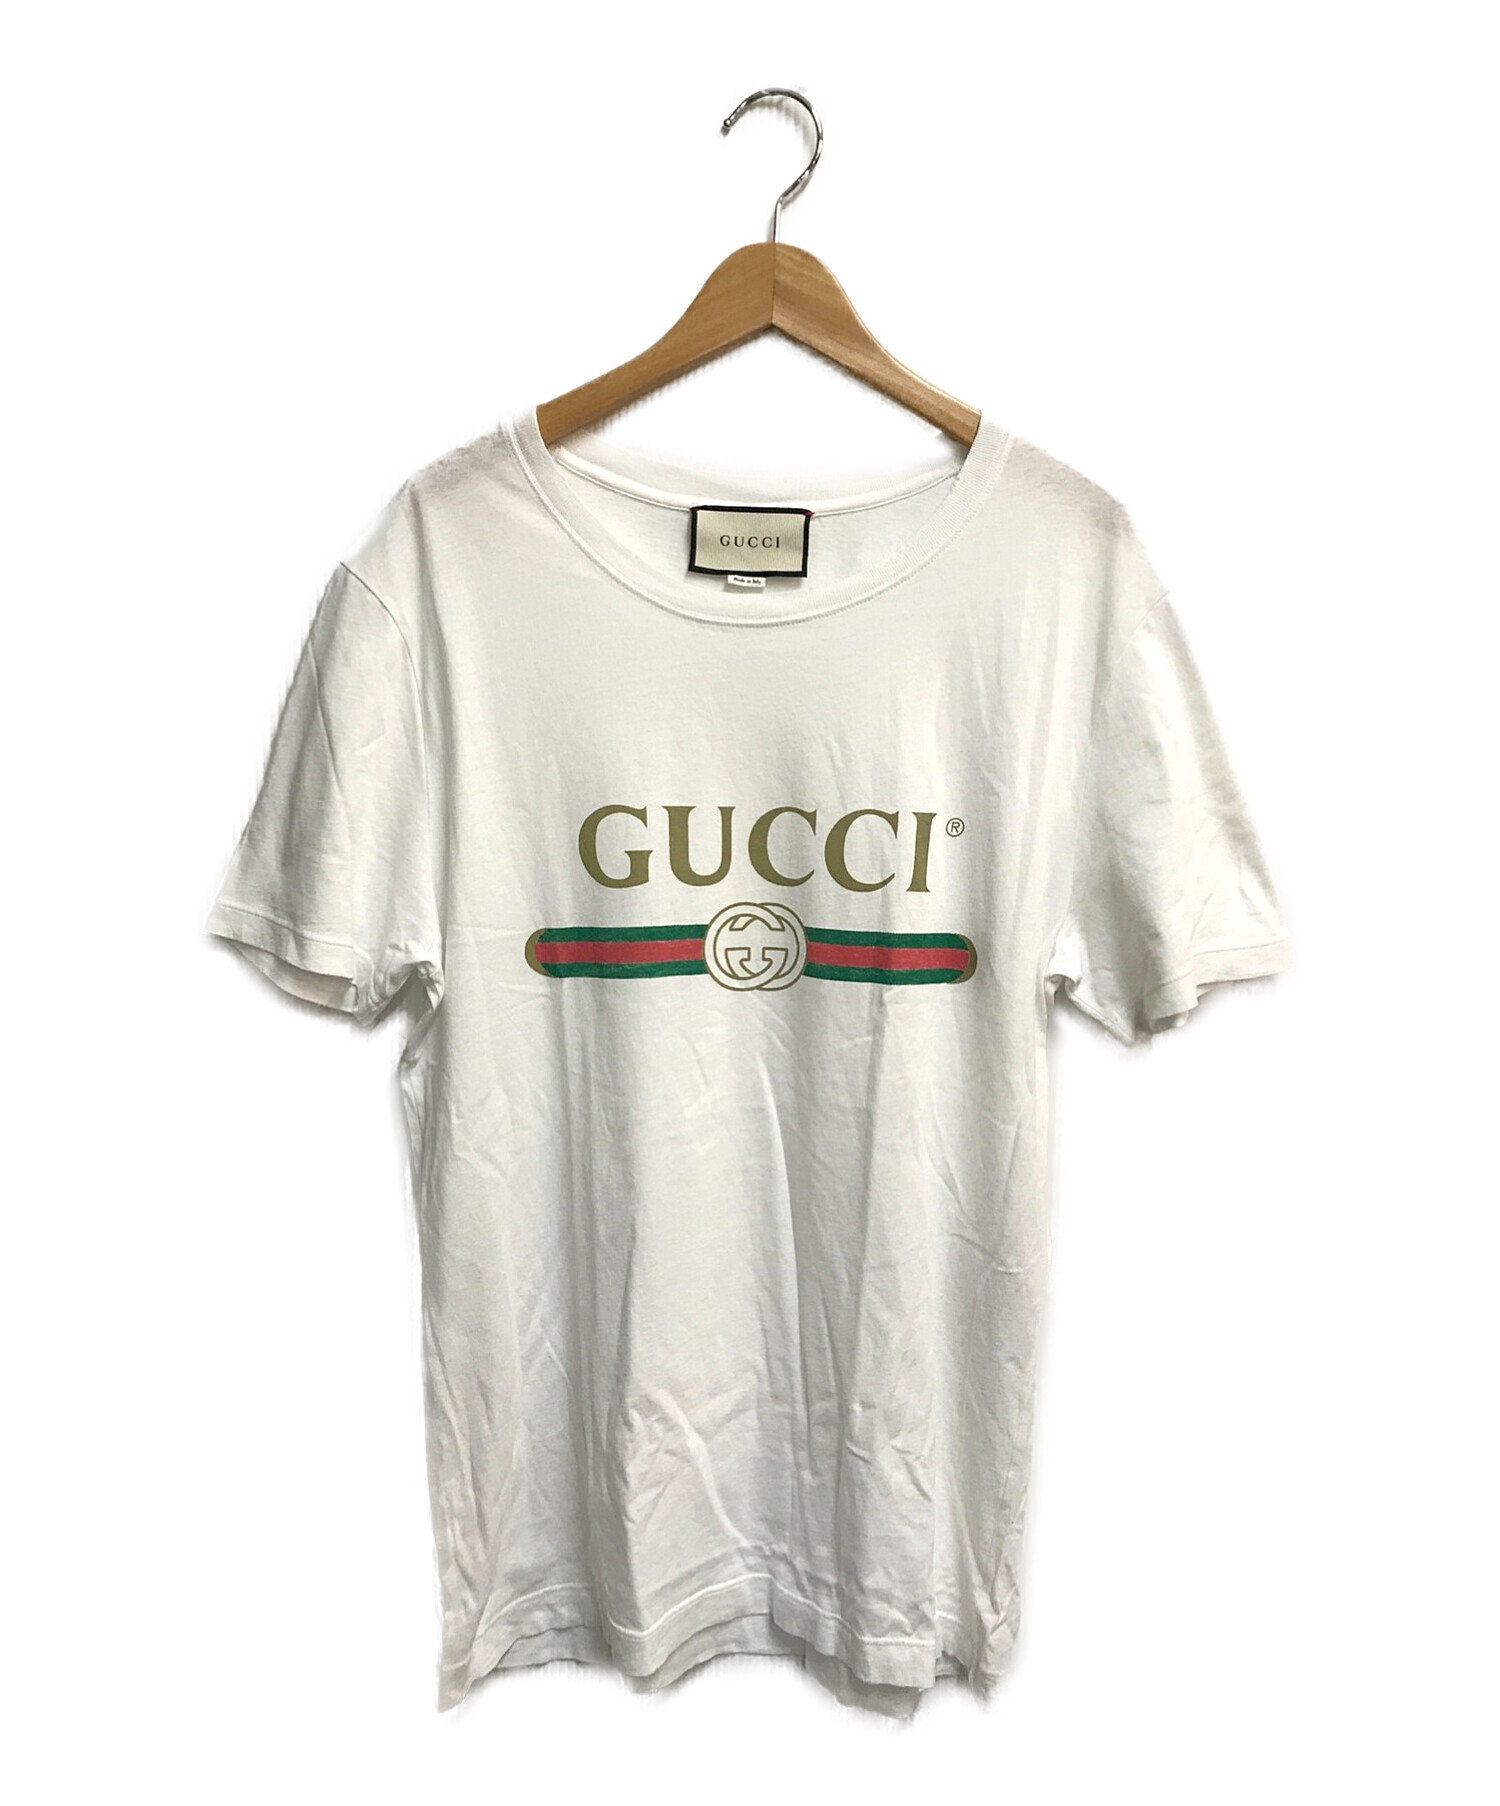 レビューを書けば送料当店負担】 Gucci ロゴTシャツ - Tシャツ 